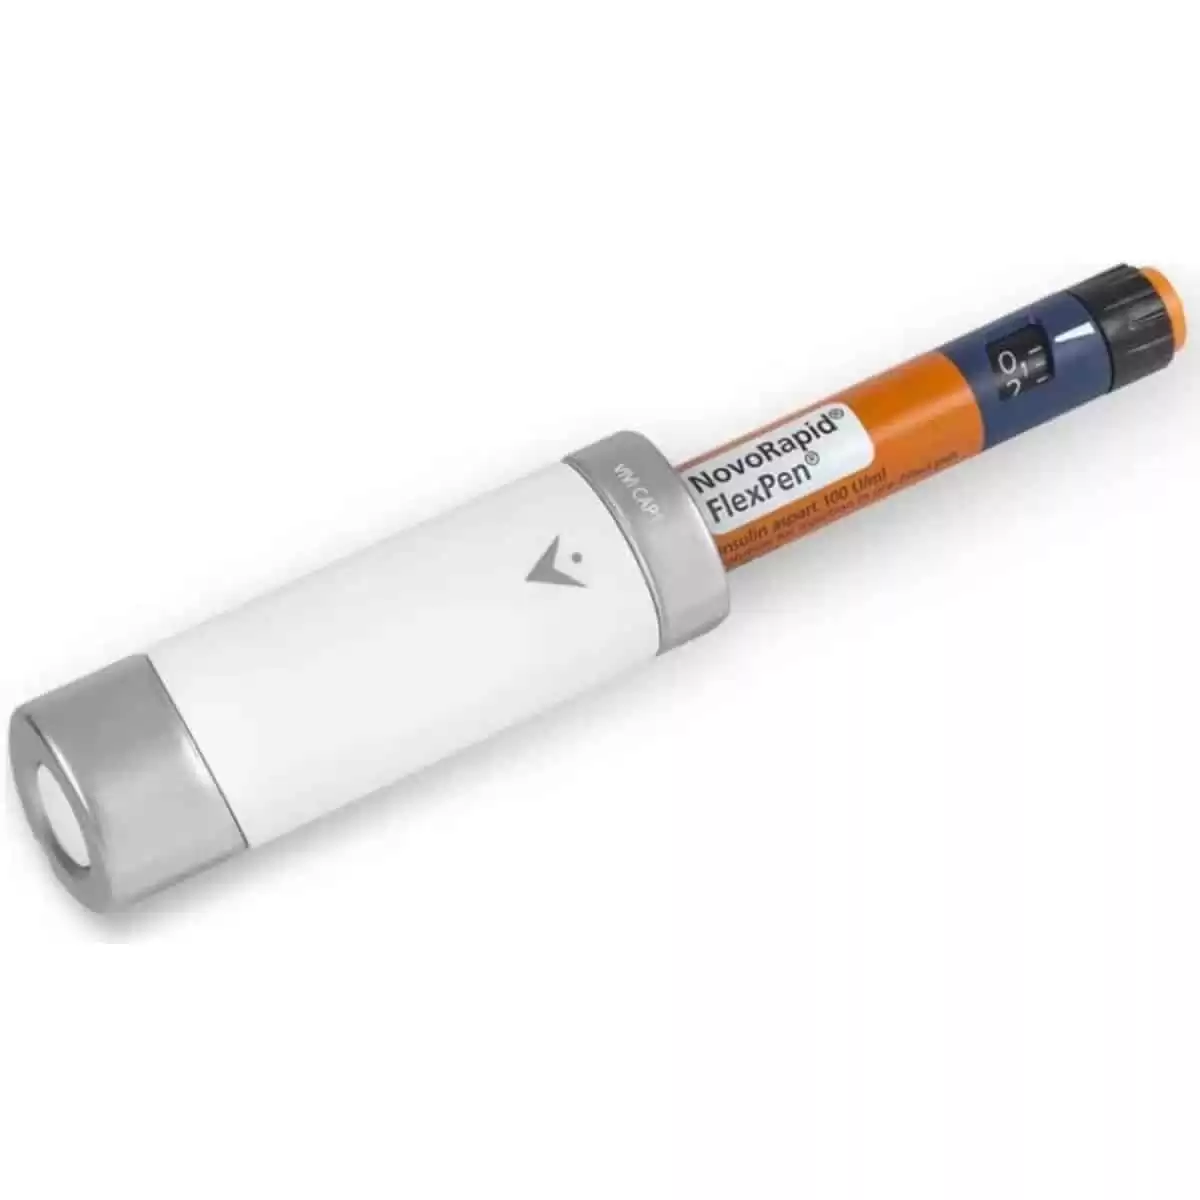 VIVI Cap Thermal Insulin Pen Cooler